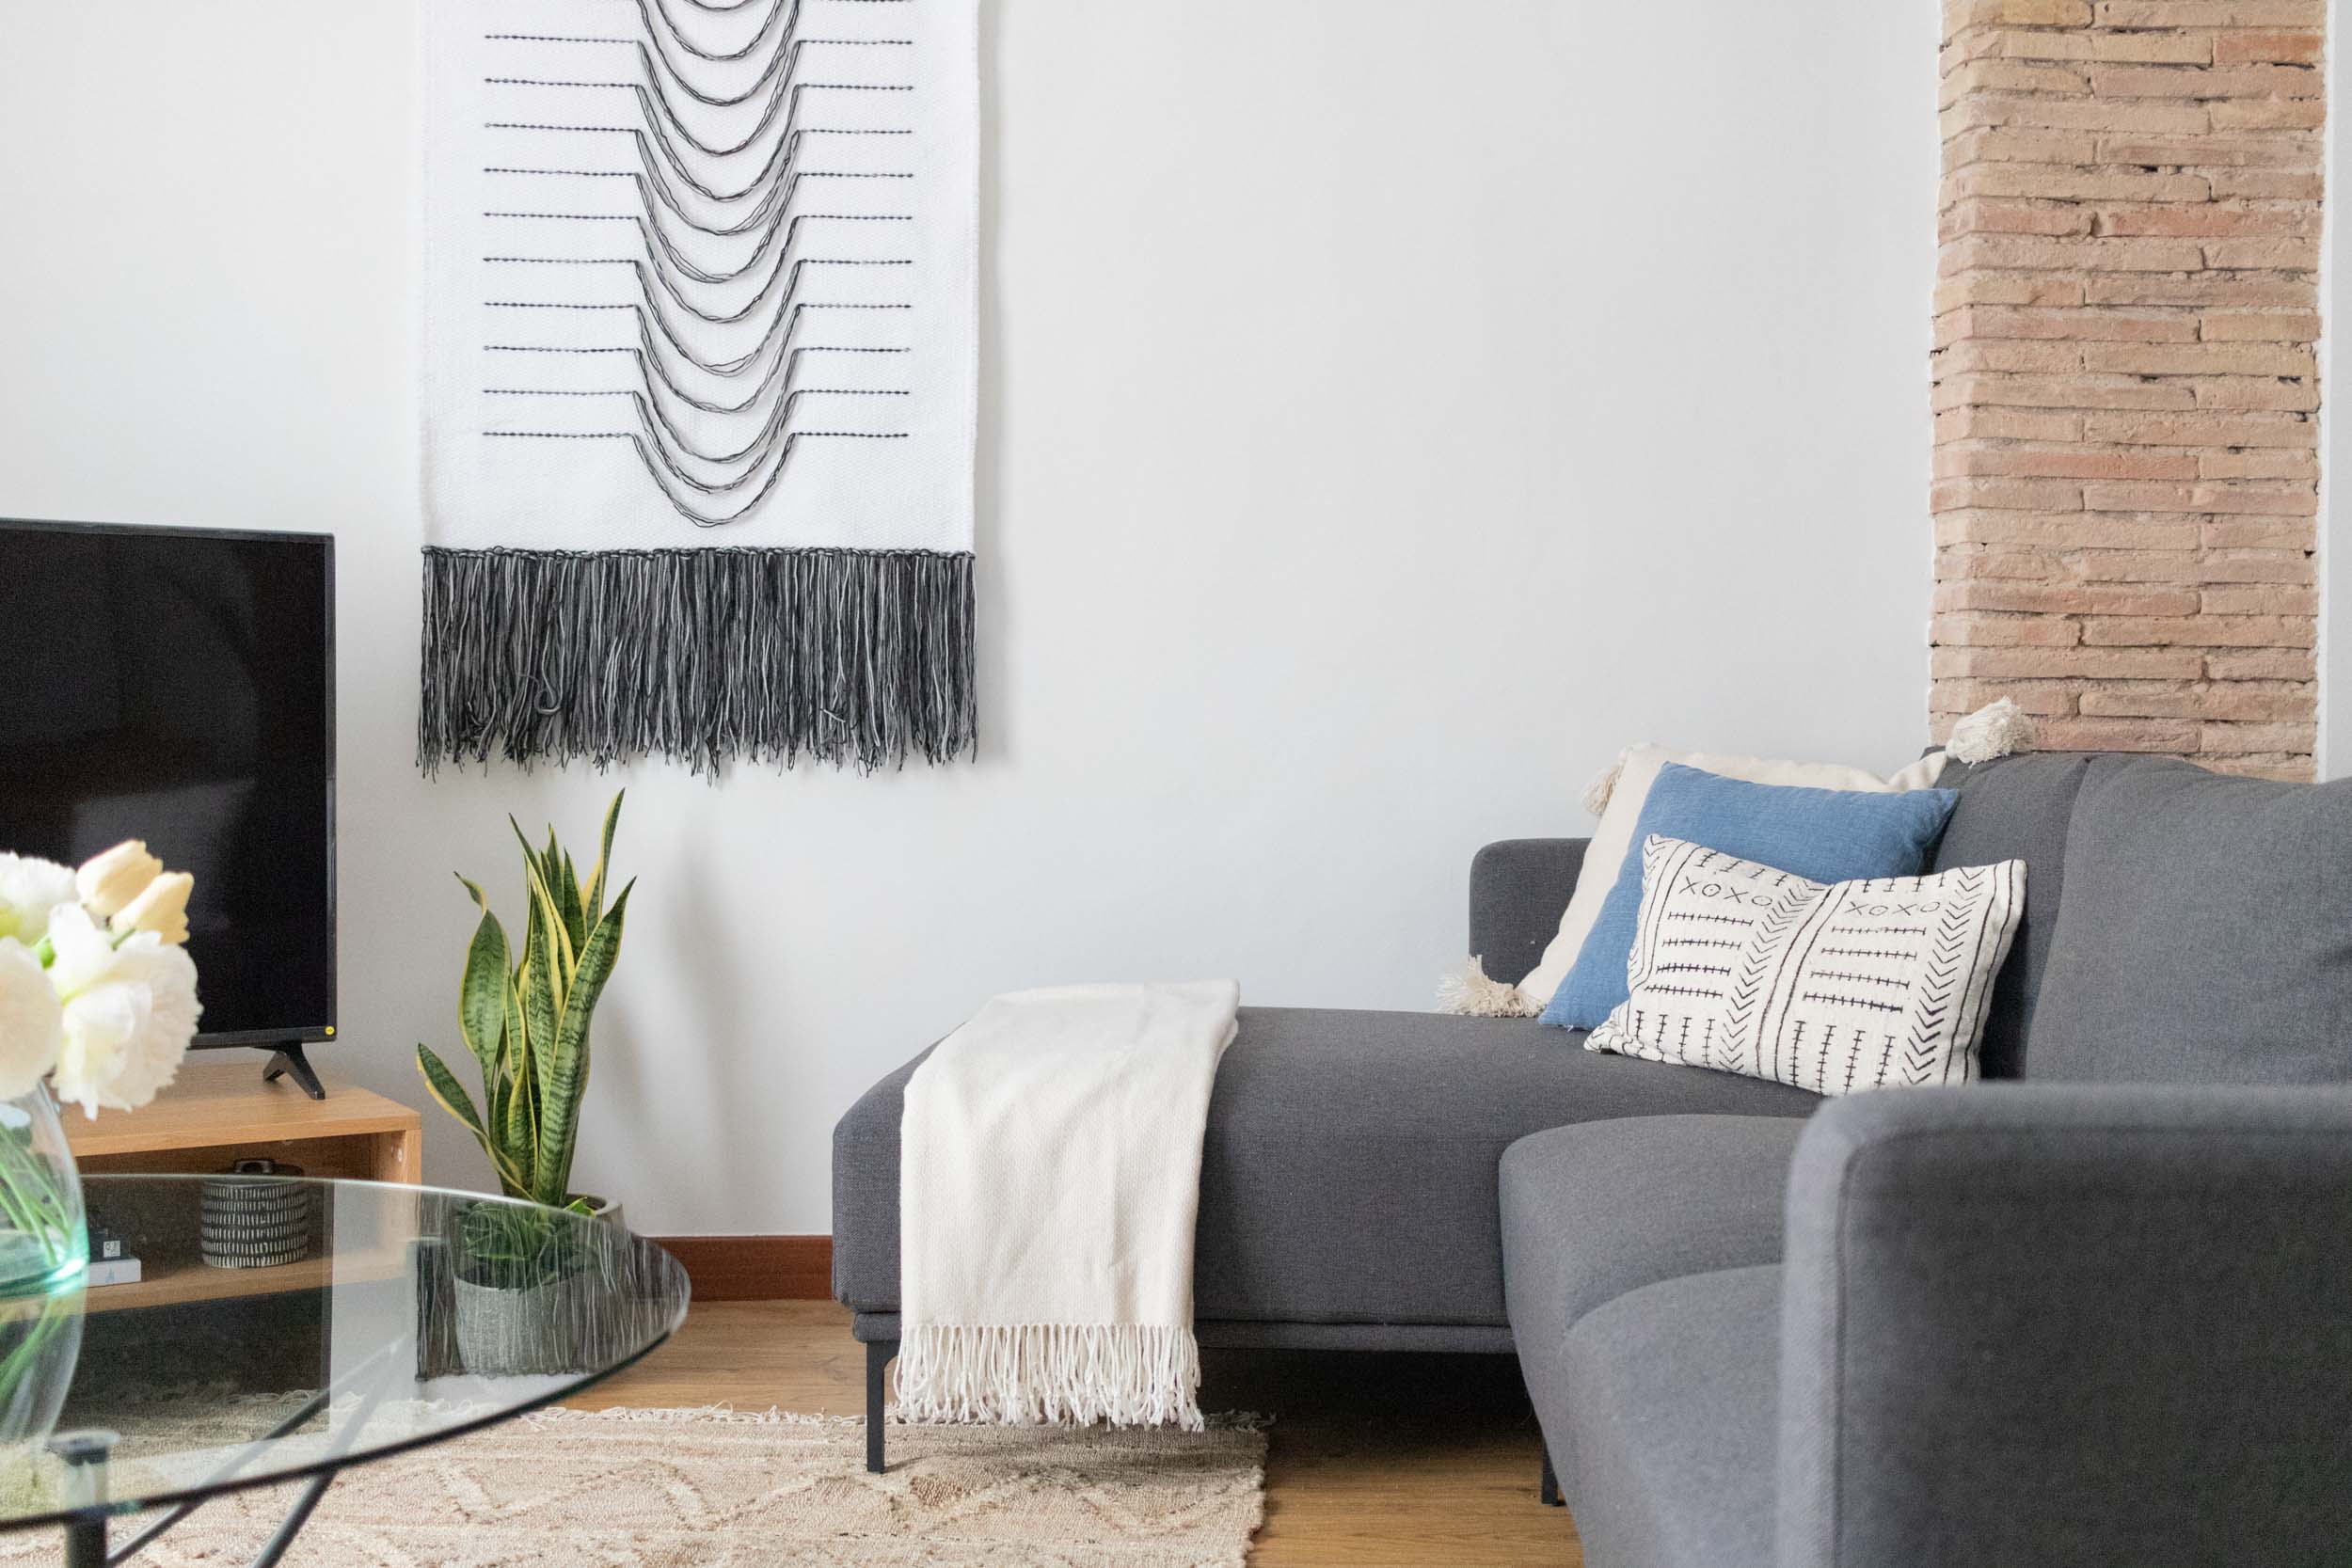 Cómo decorar tu casa desde cero, sea cual sea tu estilo